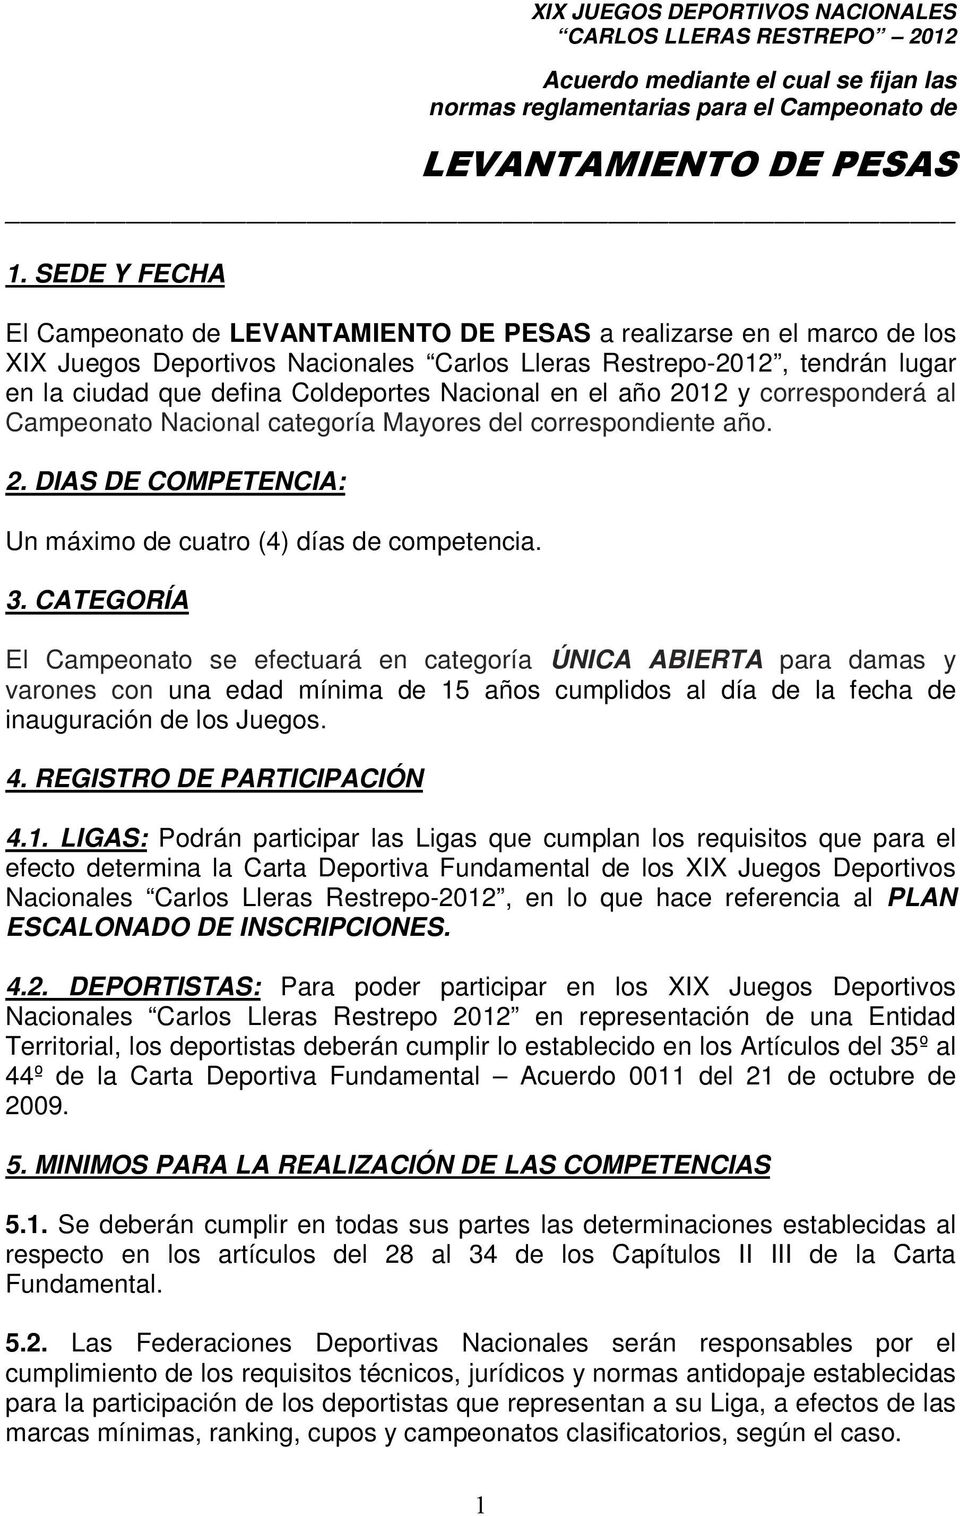 CATEGORÍA El Campeonato se efectuará en categoría ÚNICA ABIERTA para damas y varones con una edad mínima de 15 años cumplidos al día de la fecha de inauguración de los Juegos. 4.